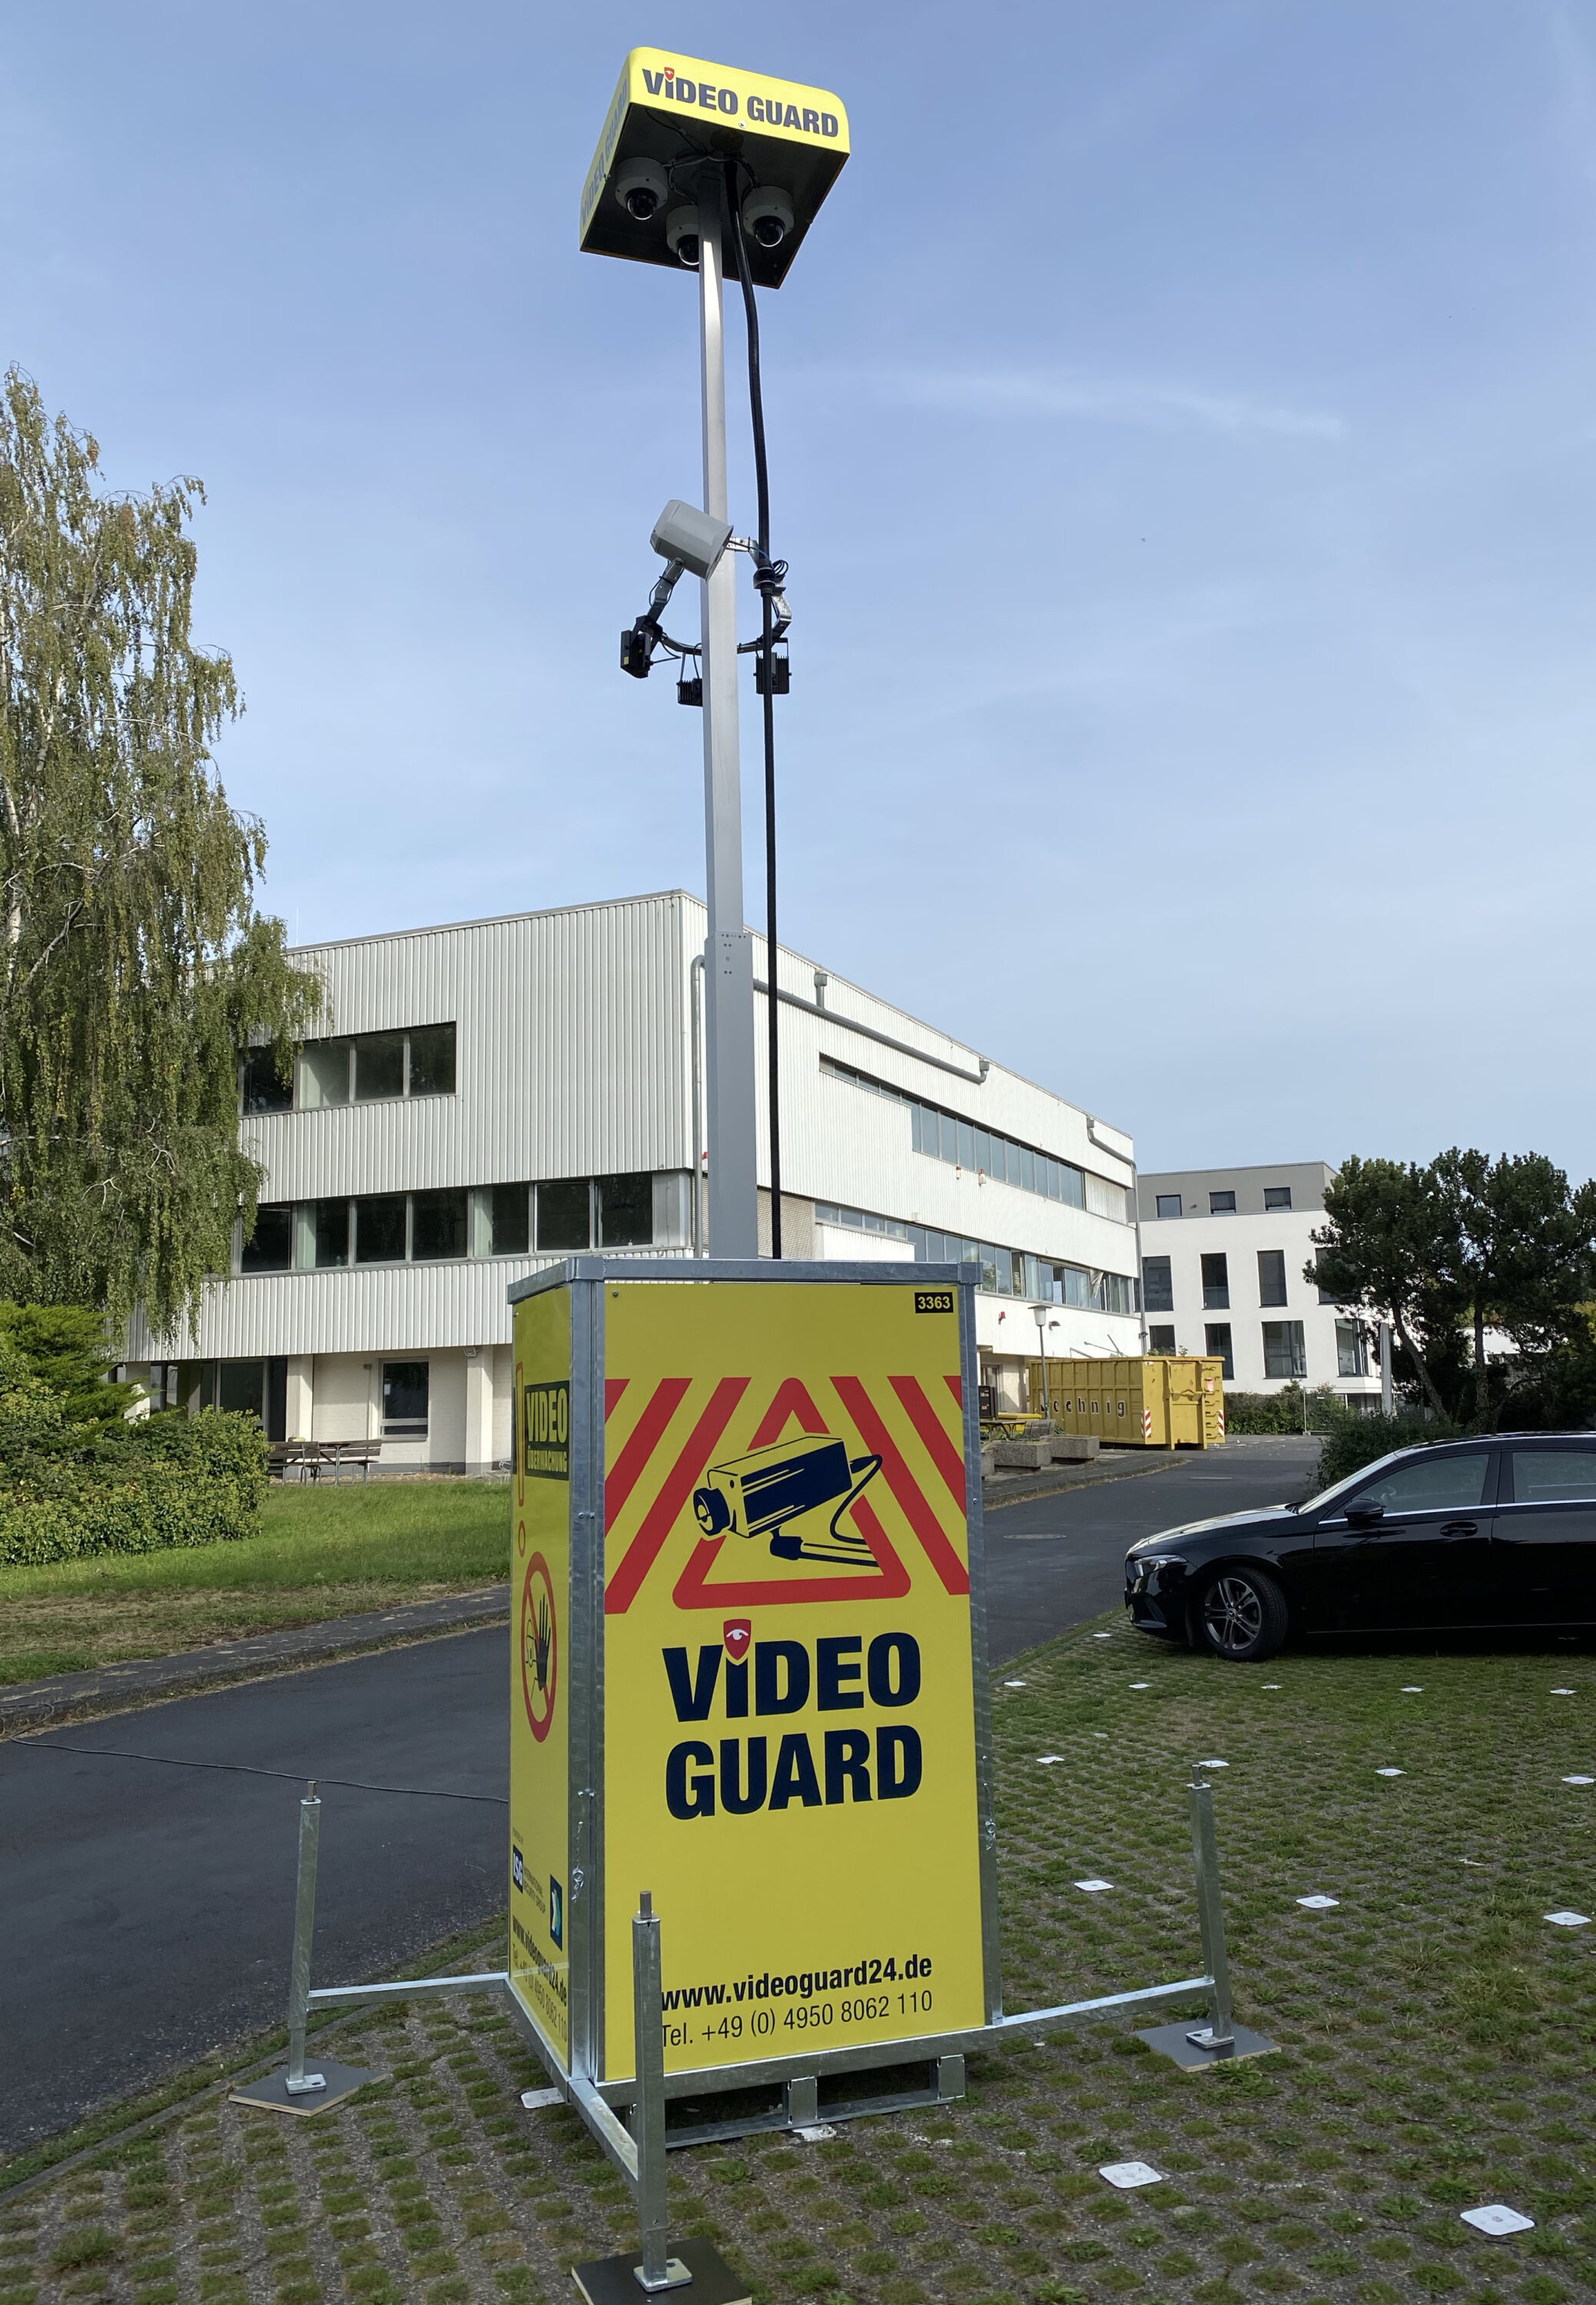 Video Guard in Bremen's Überseestadt district